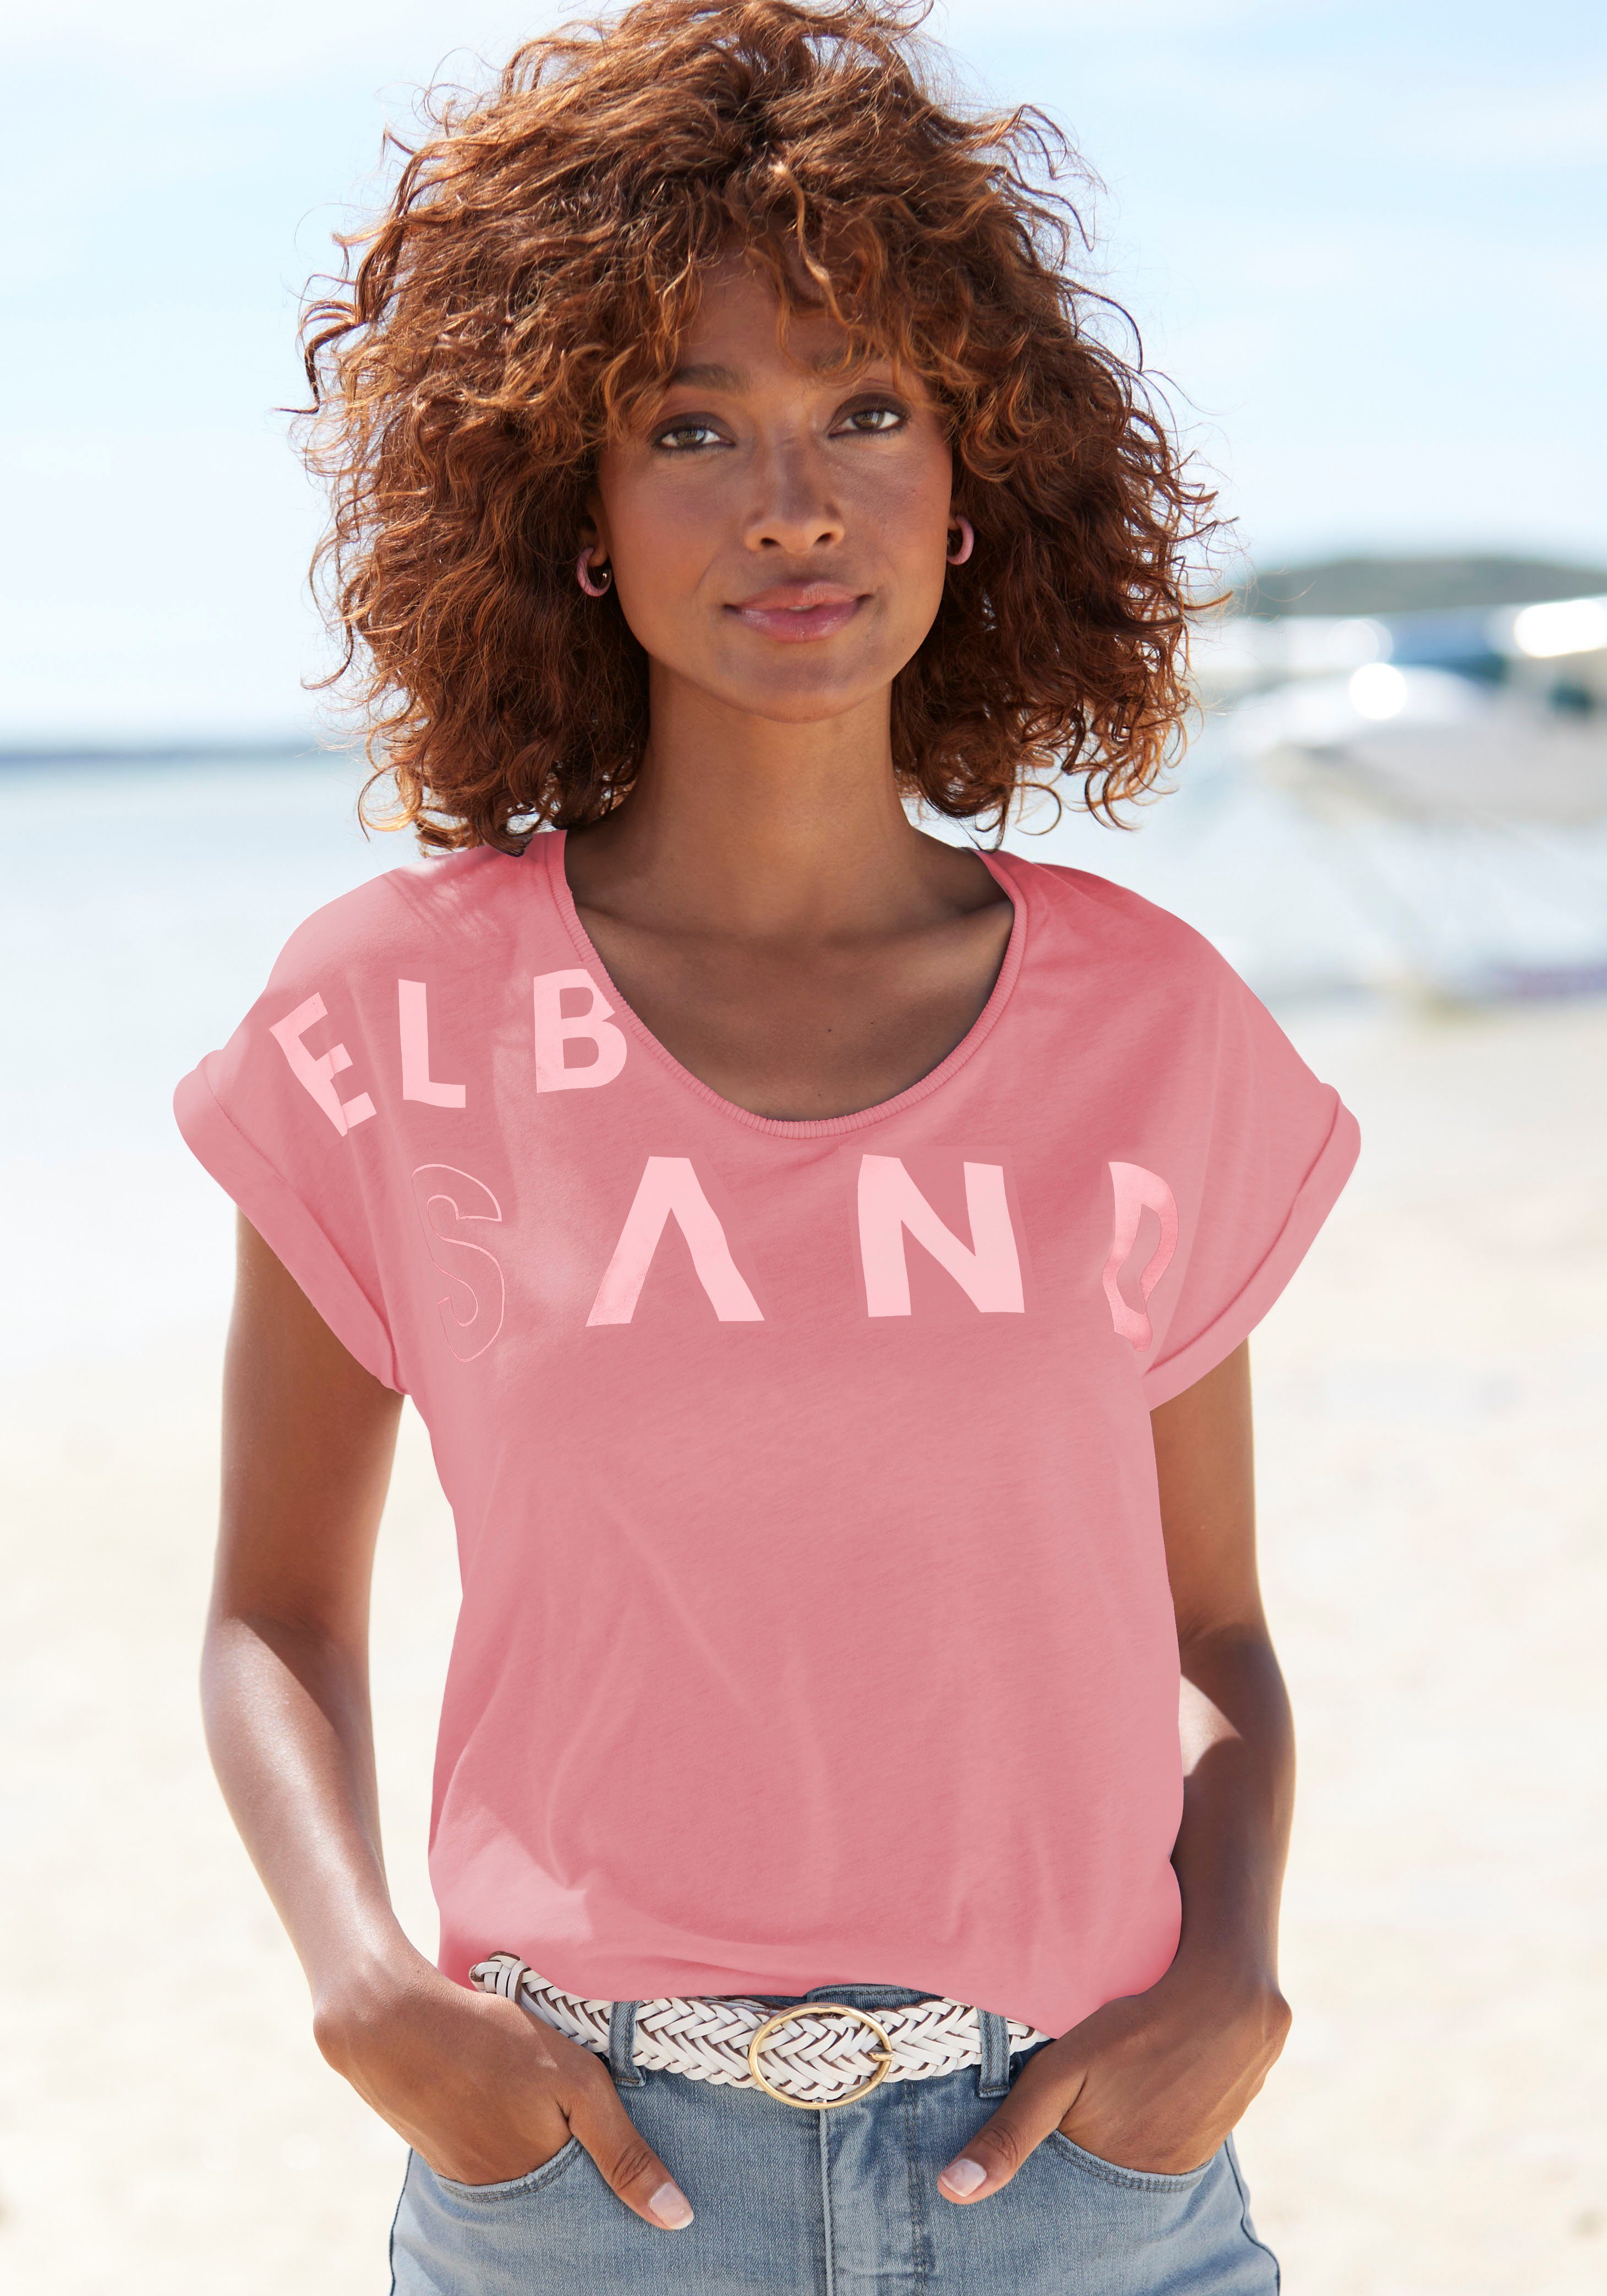 Elbsand T-Shirt aus weichem Jersey, Kurzarmshirt, sportlich und bequem pink